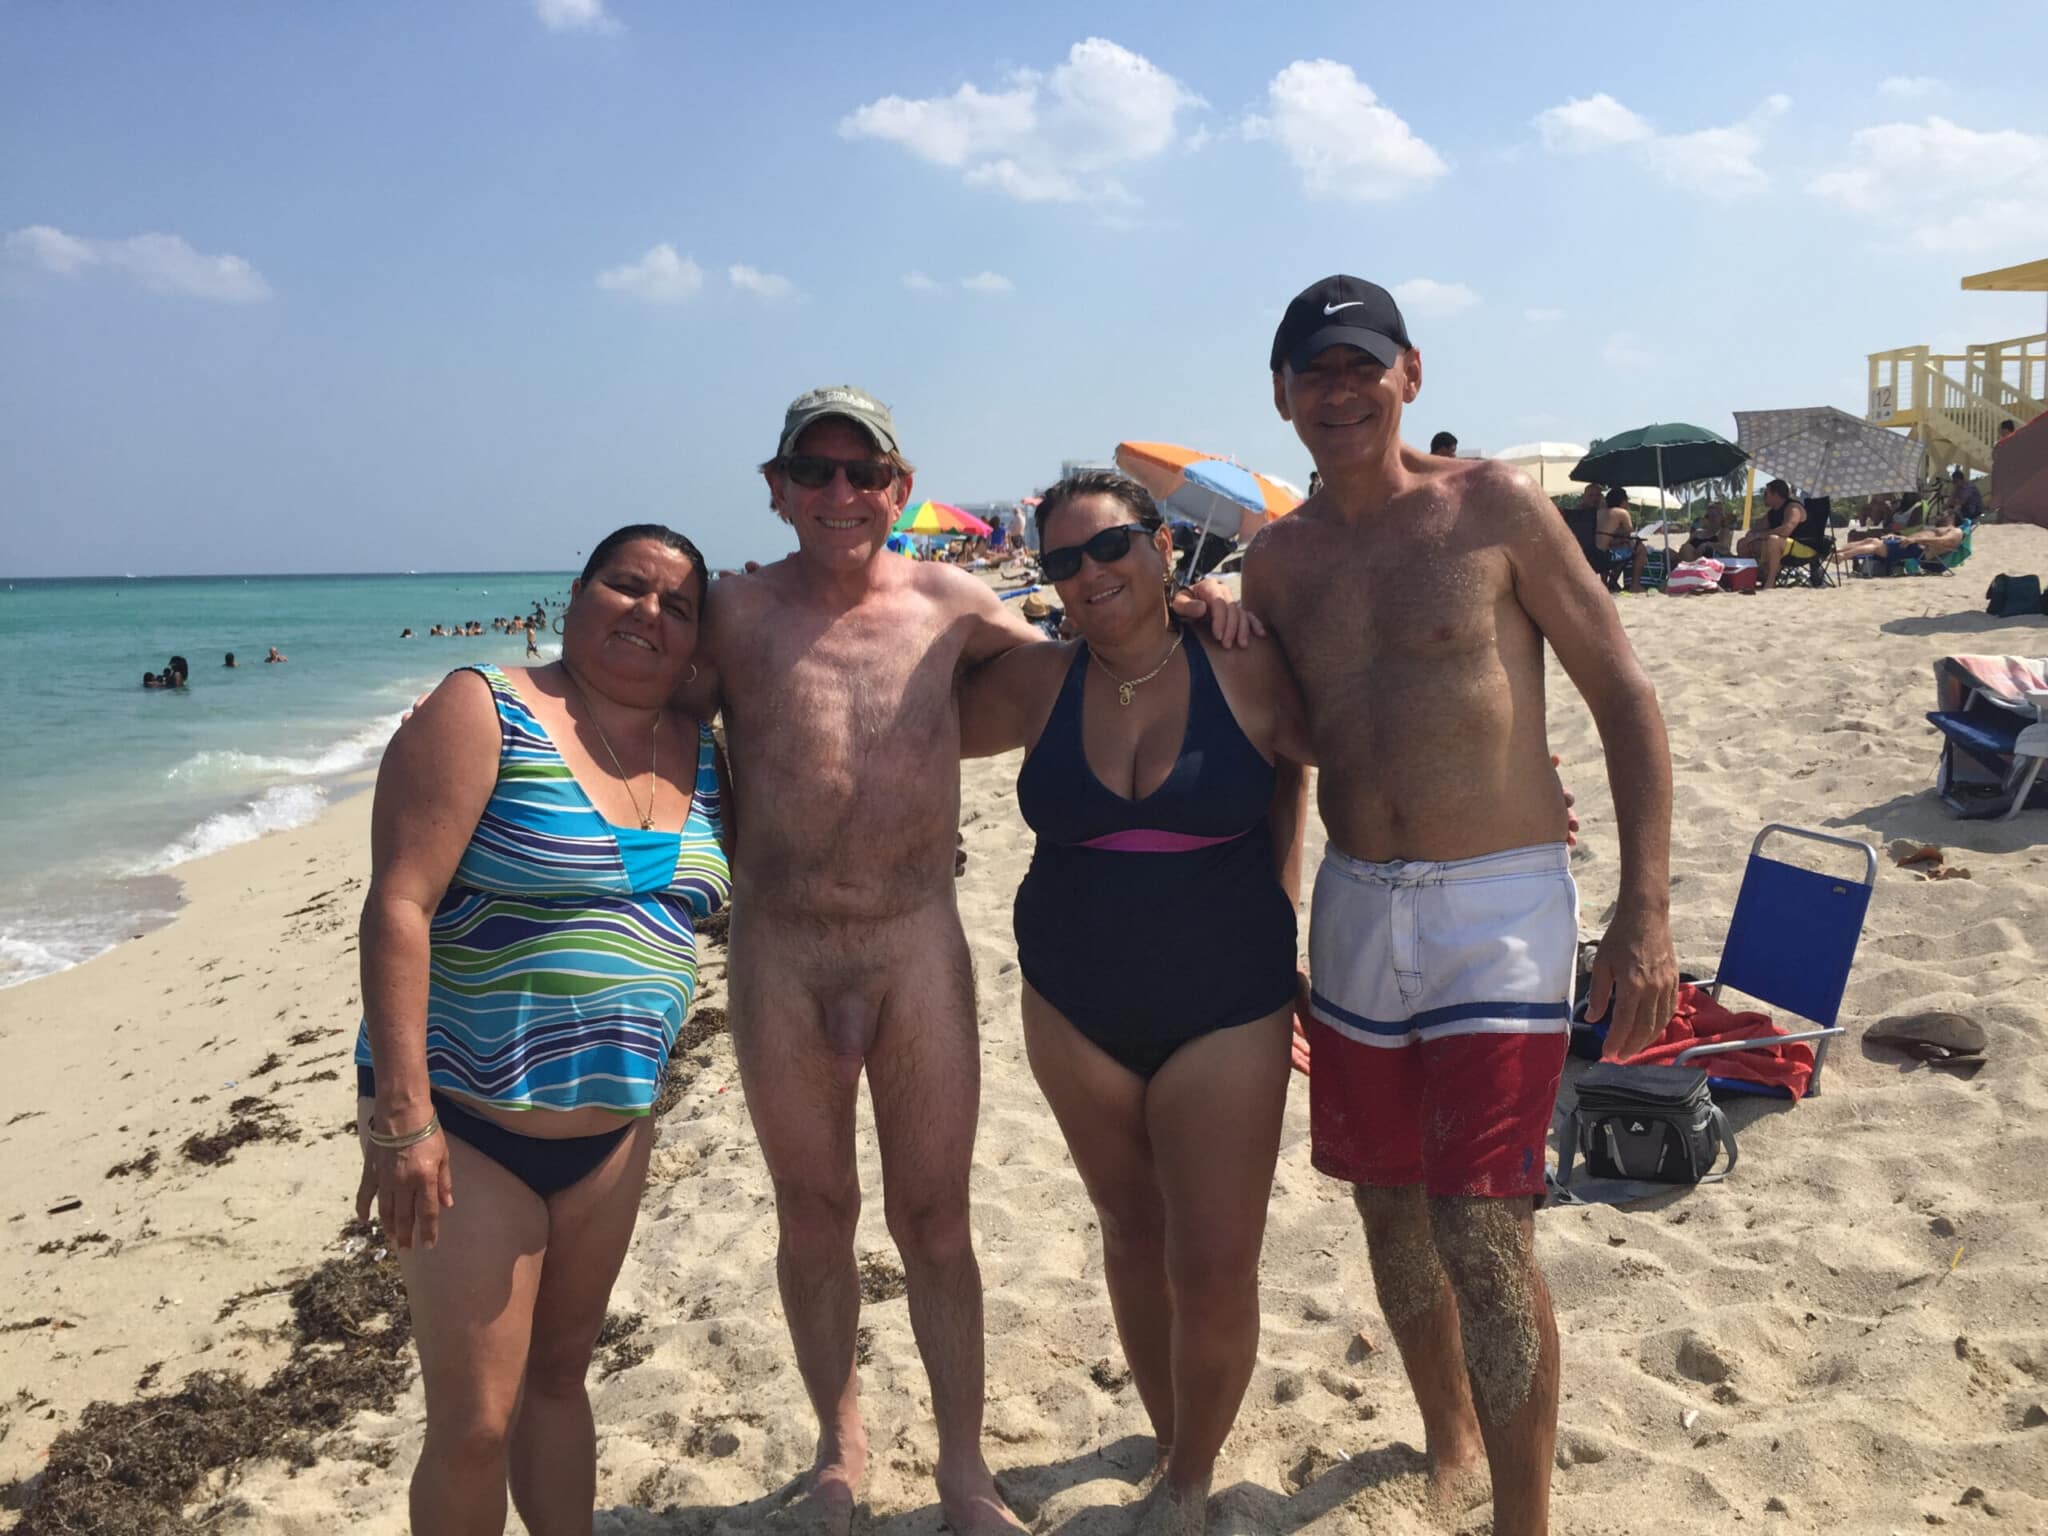 Cuban Tourist real nudity public nudity nude beach dick flash